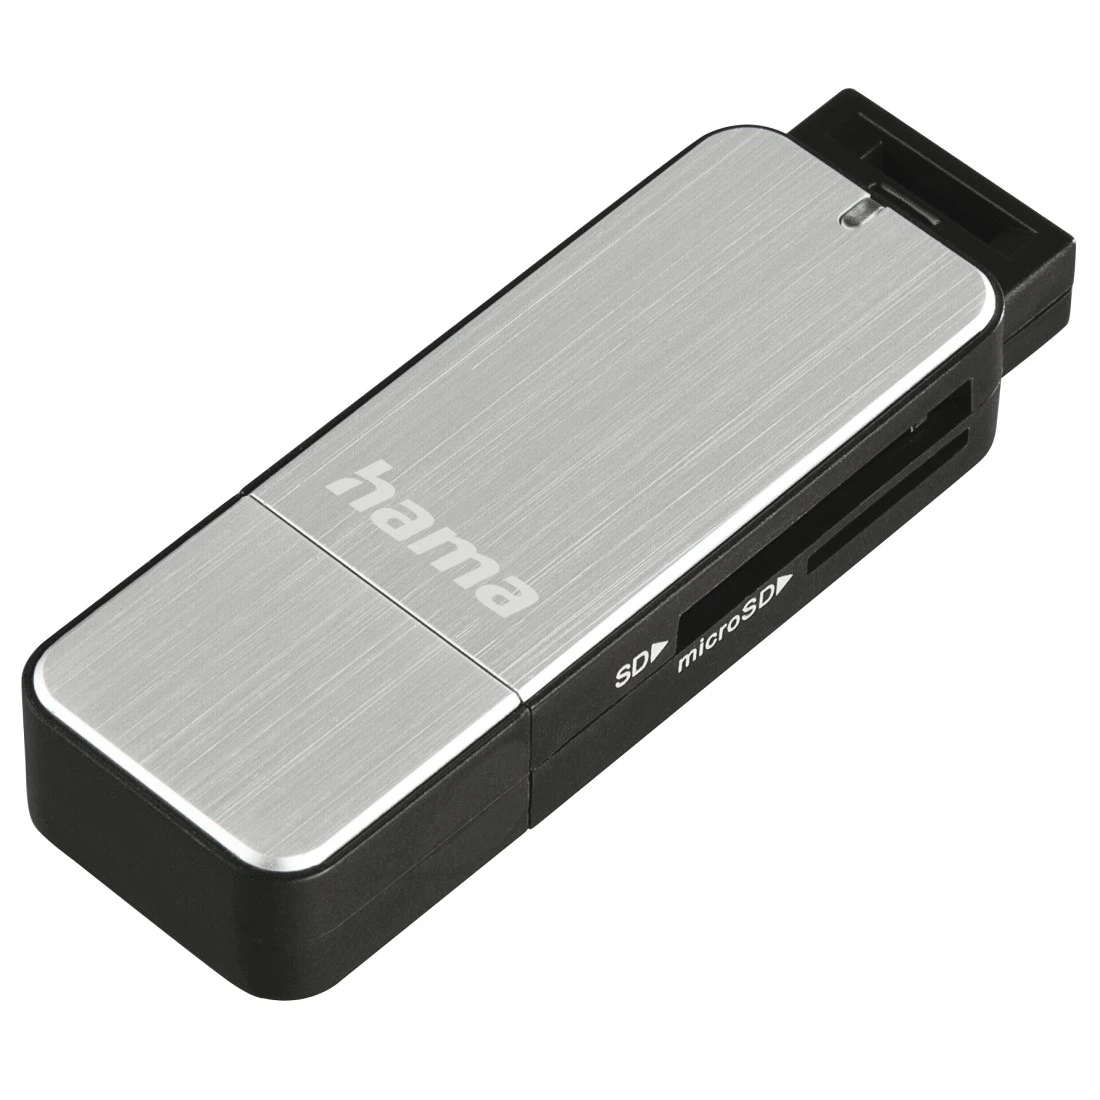 USB 3.0 card reader SD, zilver